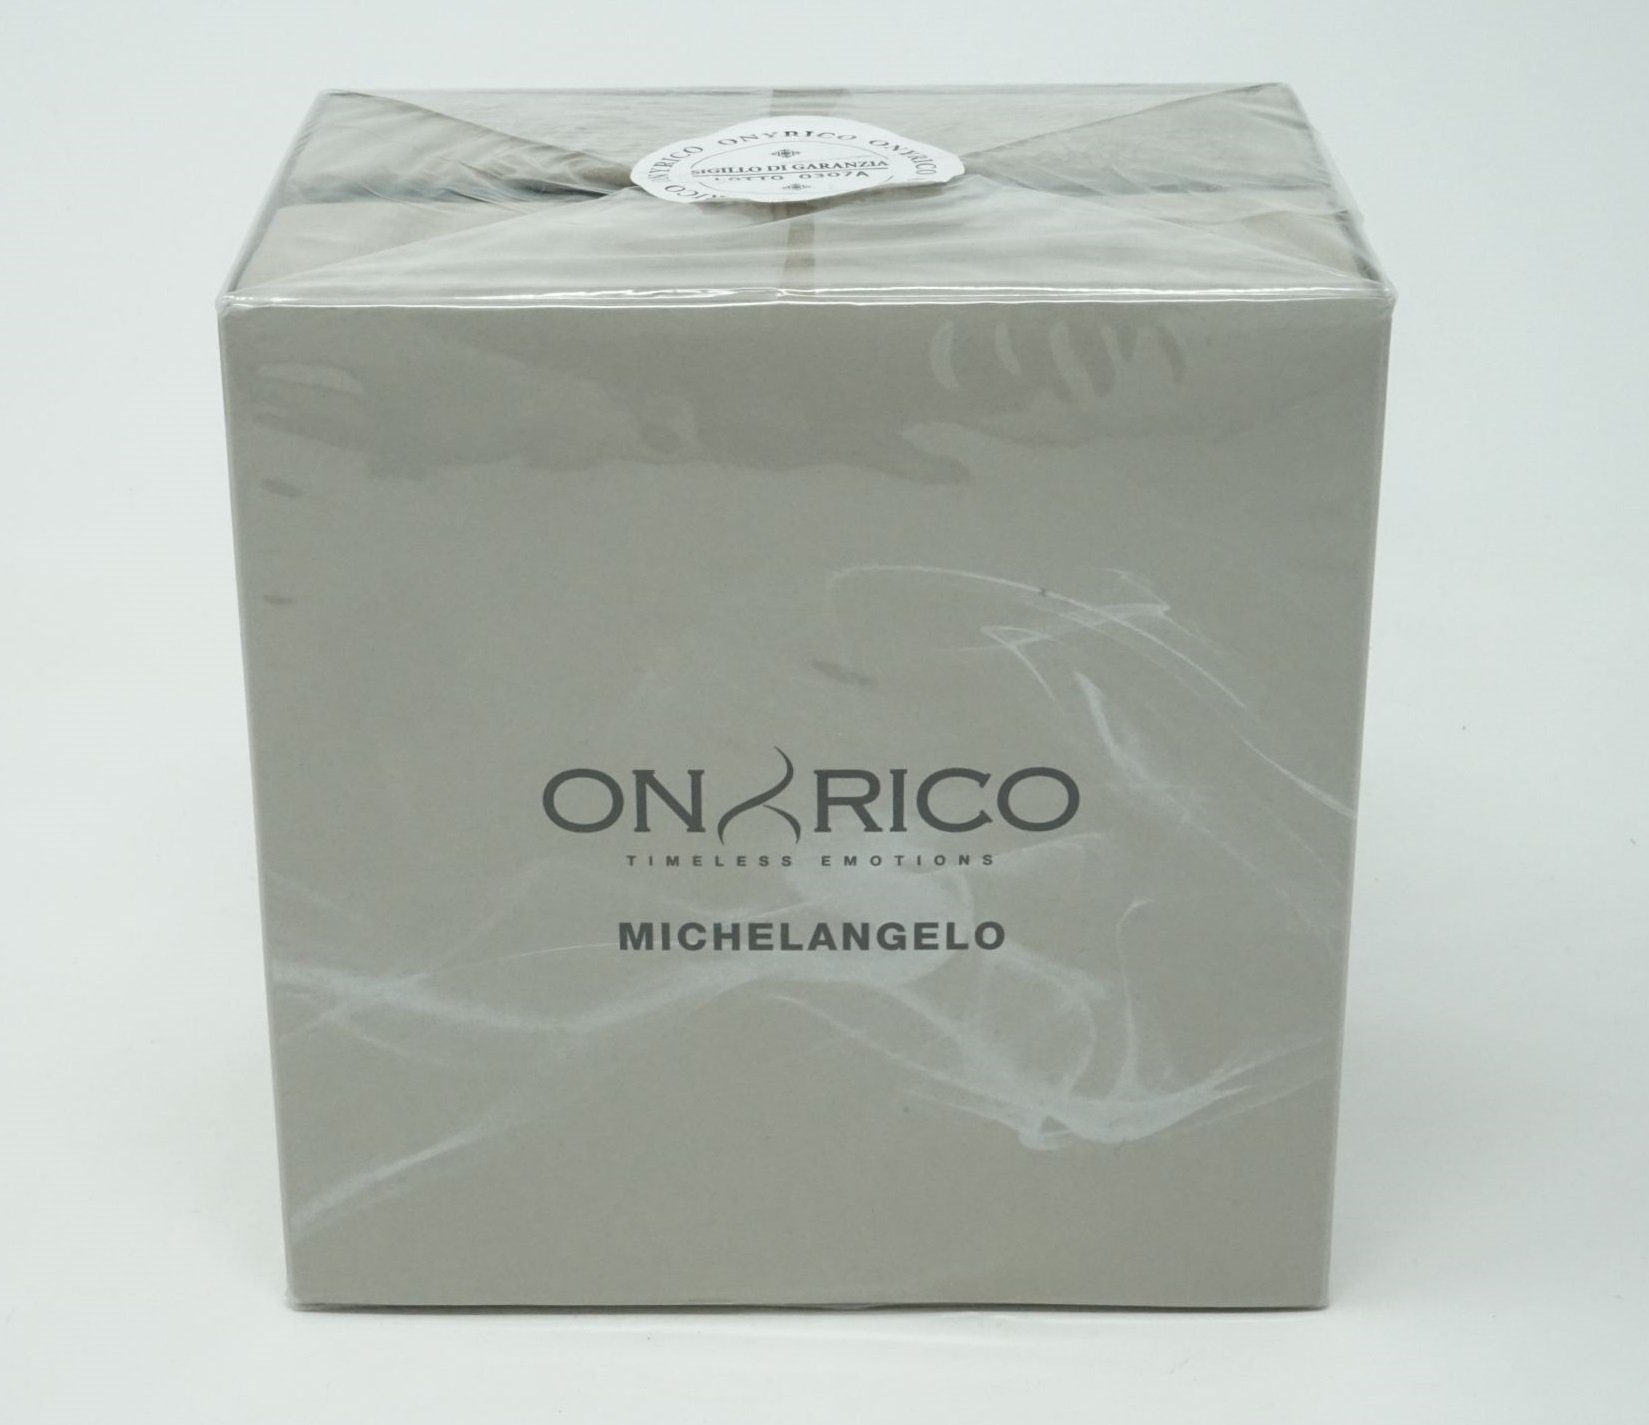 Tiziana Emotions Eau Terenzi 100 Timeless de ml Parfum Michelangelo Parfüm Onyrico